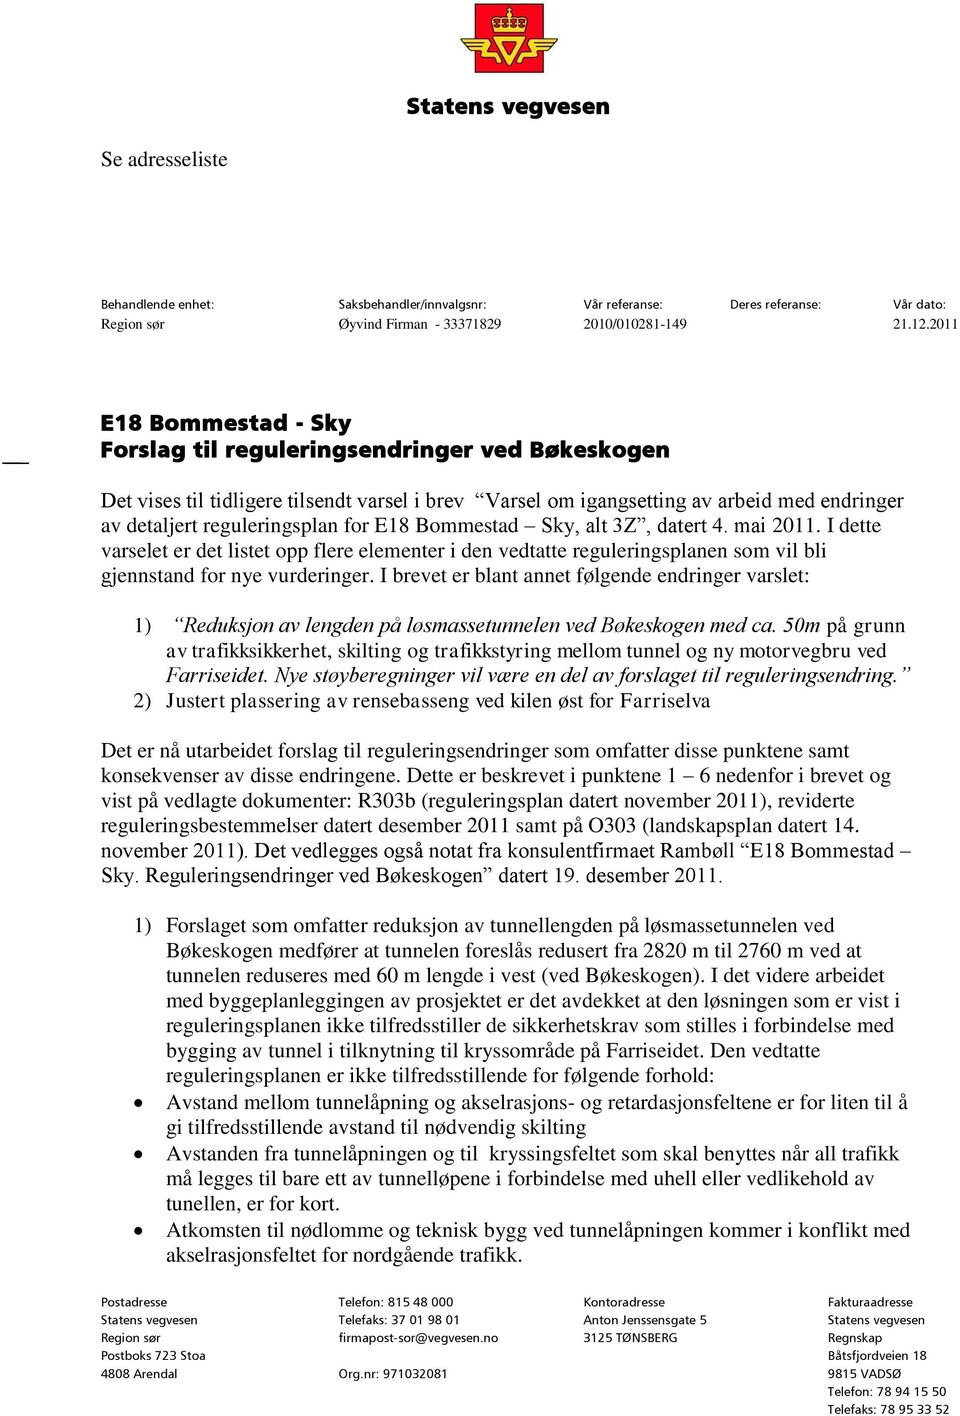 E18 Bommestad Sky, alt 3Z, datert 4. mai 2011. I dette varselet er det listet opp flere elementer i den vedtatte reguleringsplanen som vil bli gjennstand for nye vurderinger.